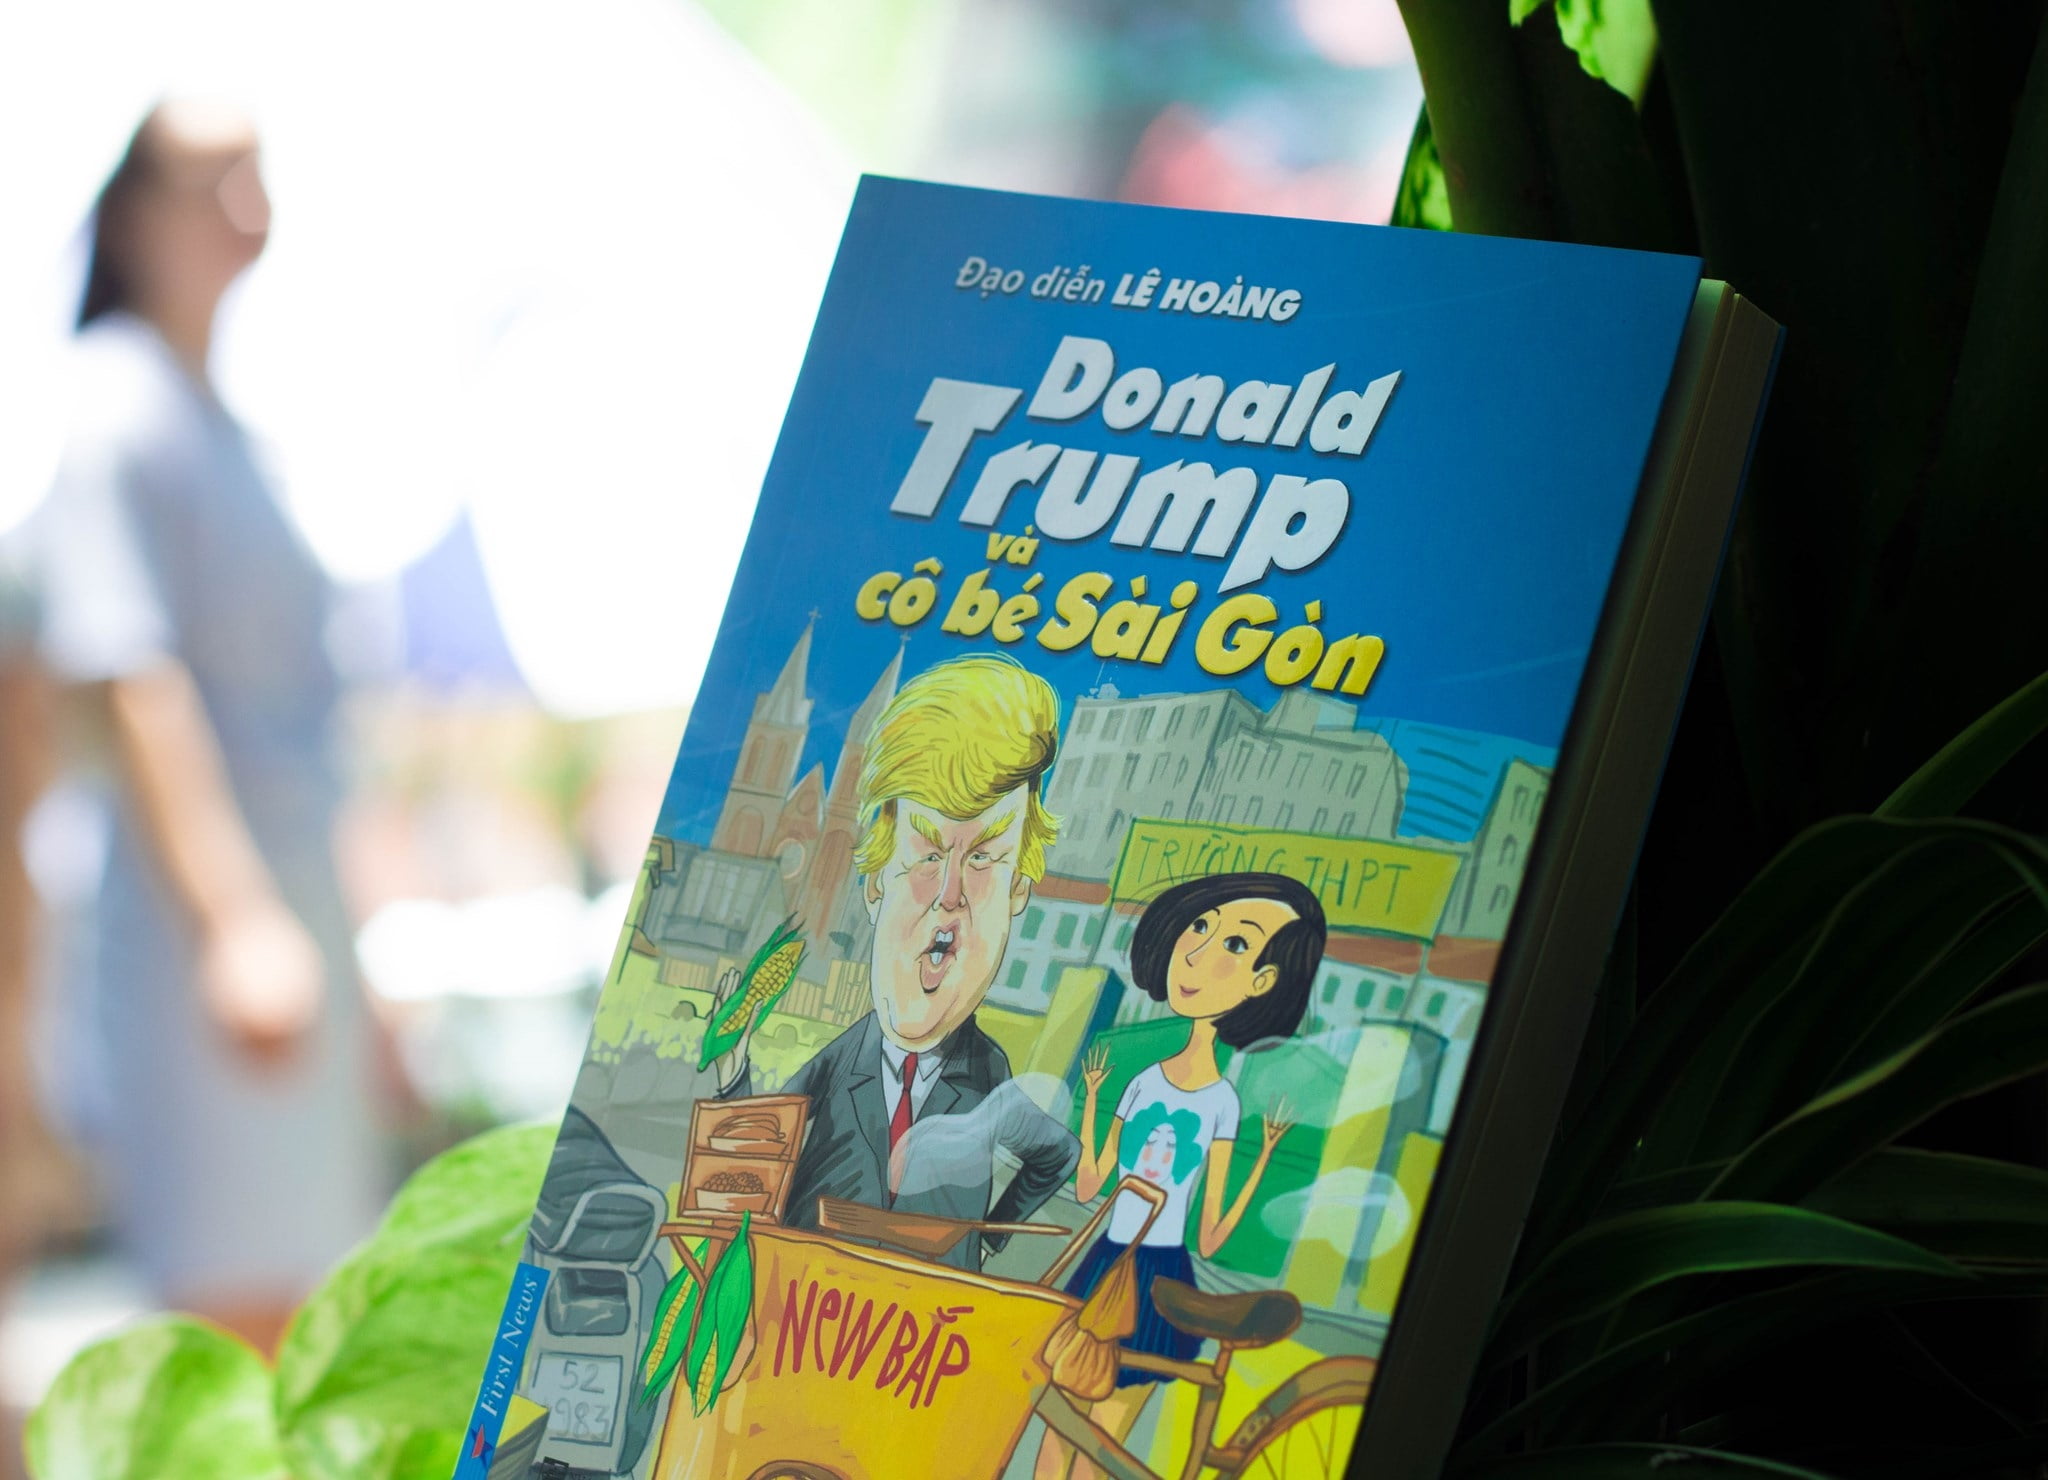 Donald Trump Và Cô Bé Sài Gòn PDF